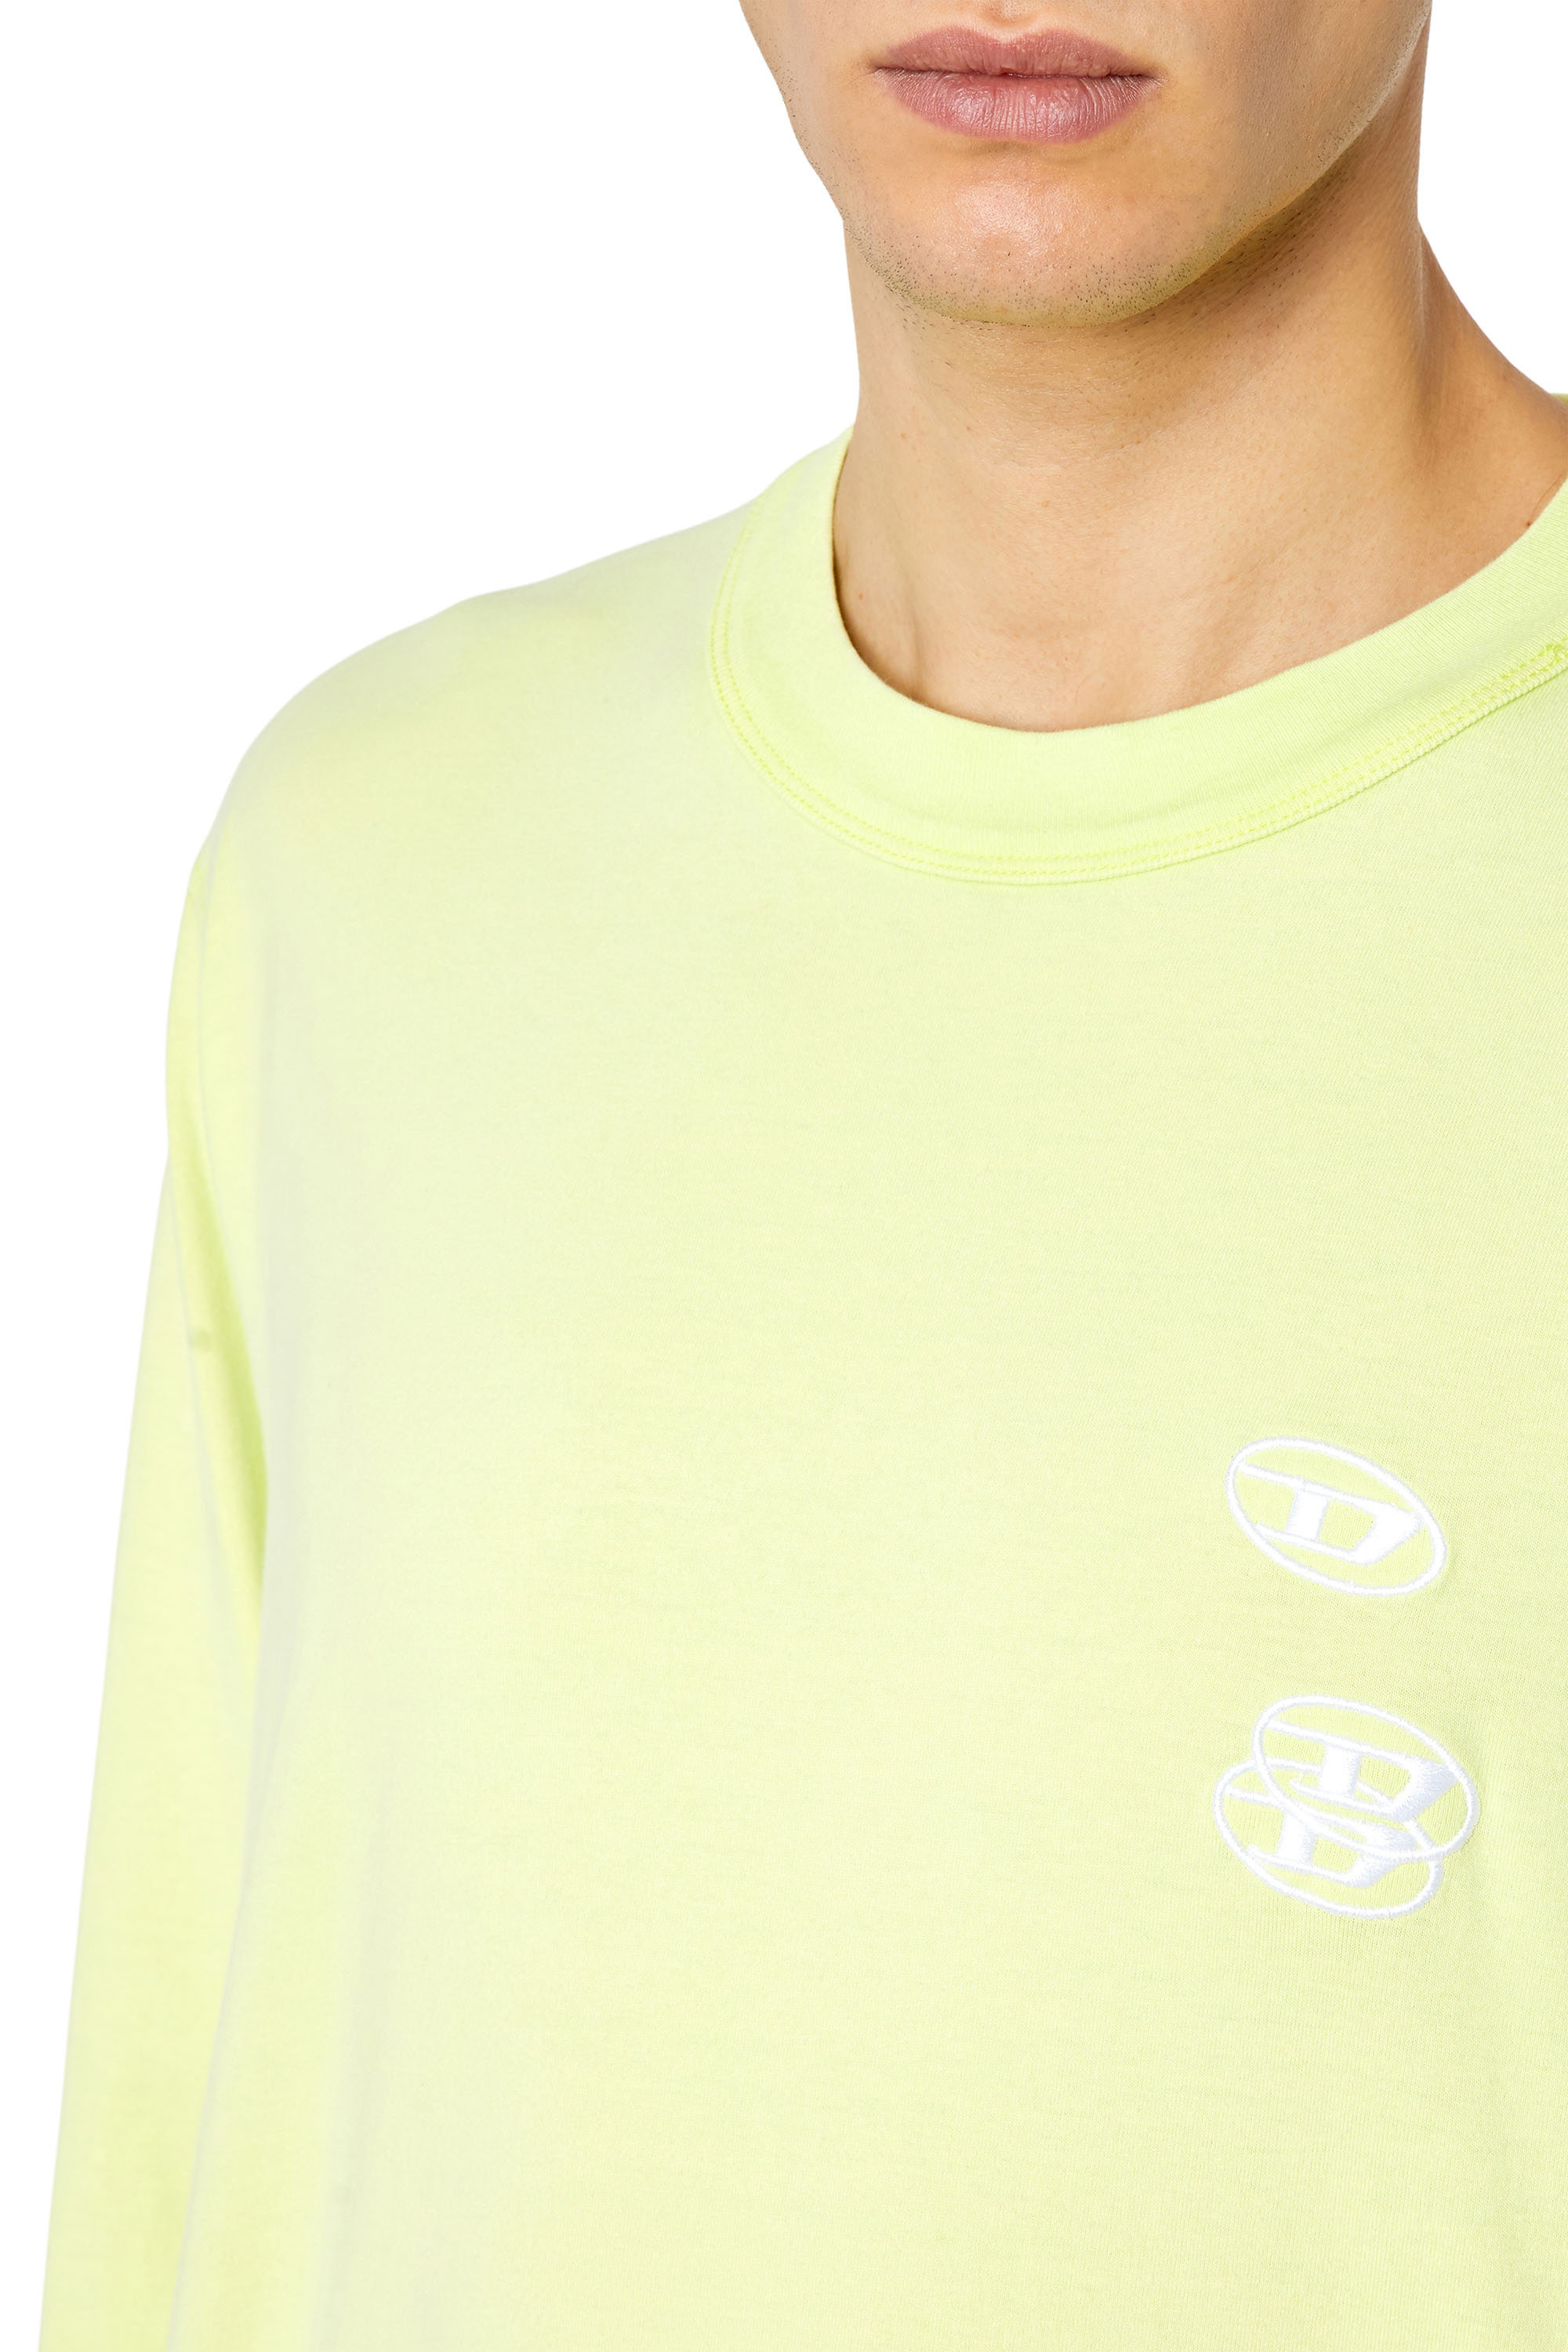 Sacoor Woman Shirt Yellow XS discount 98% WOMEN FASHION Shirts & T-shirts Shirt Print 